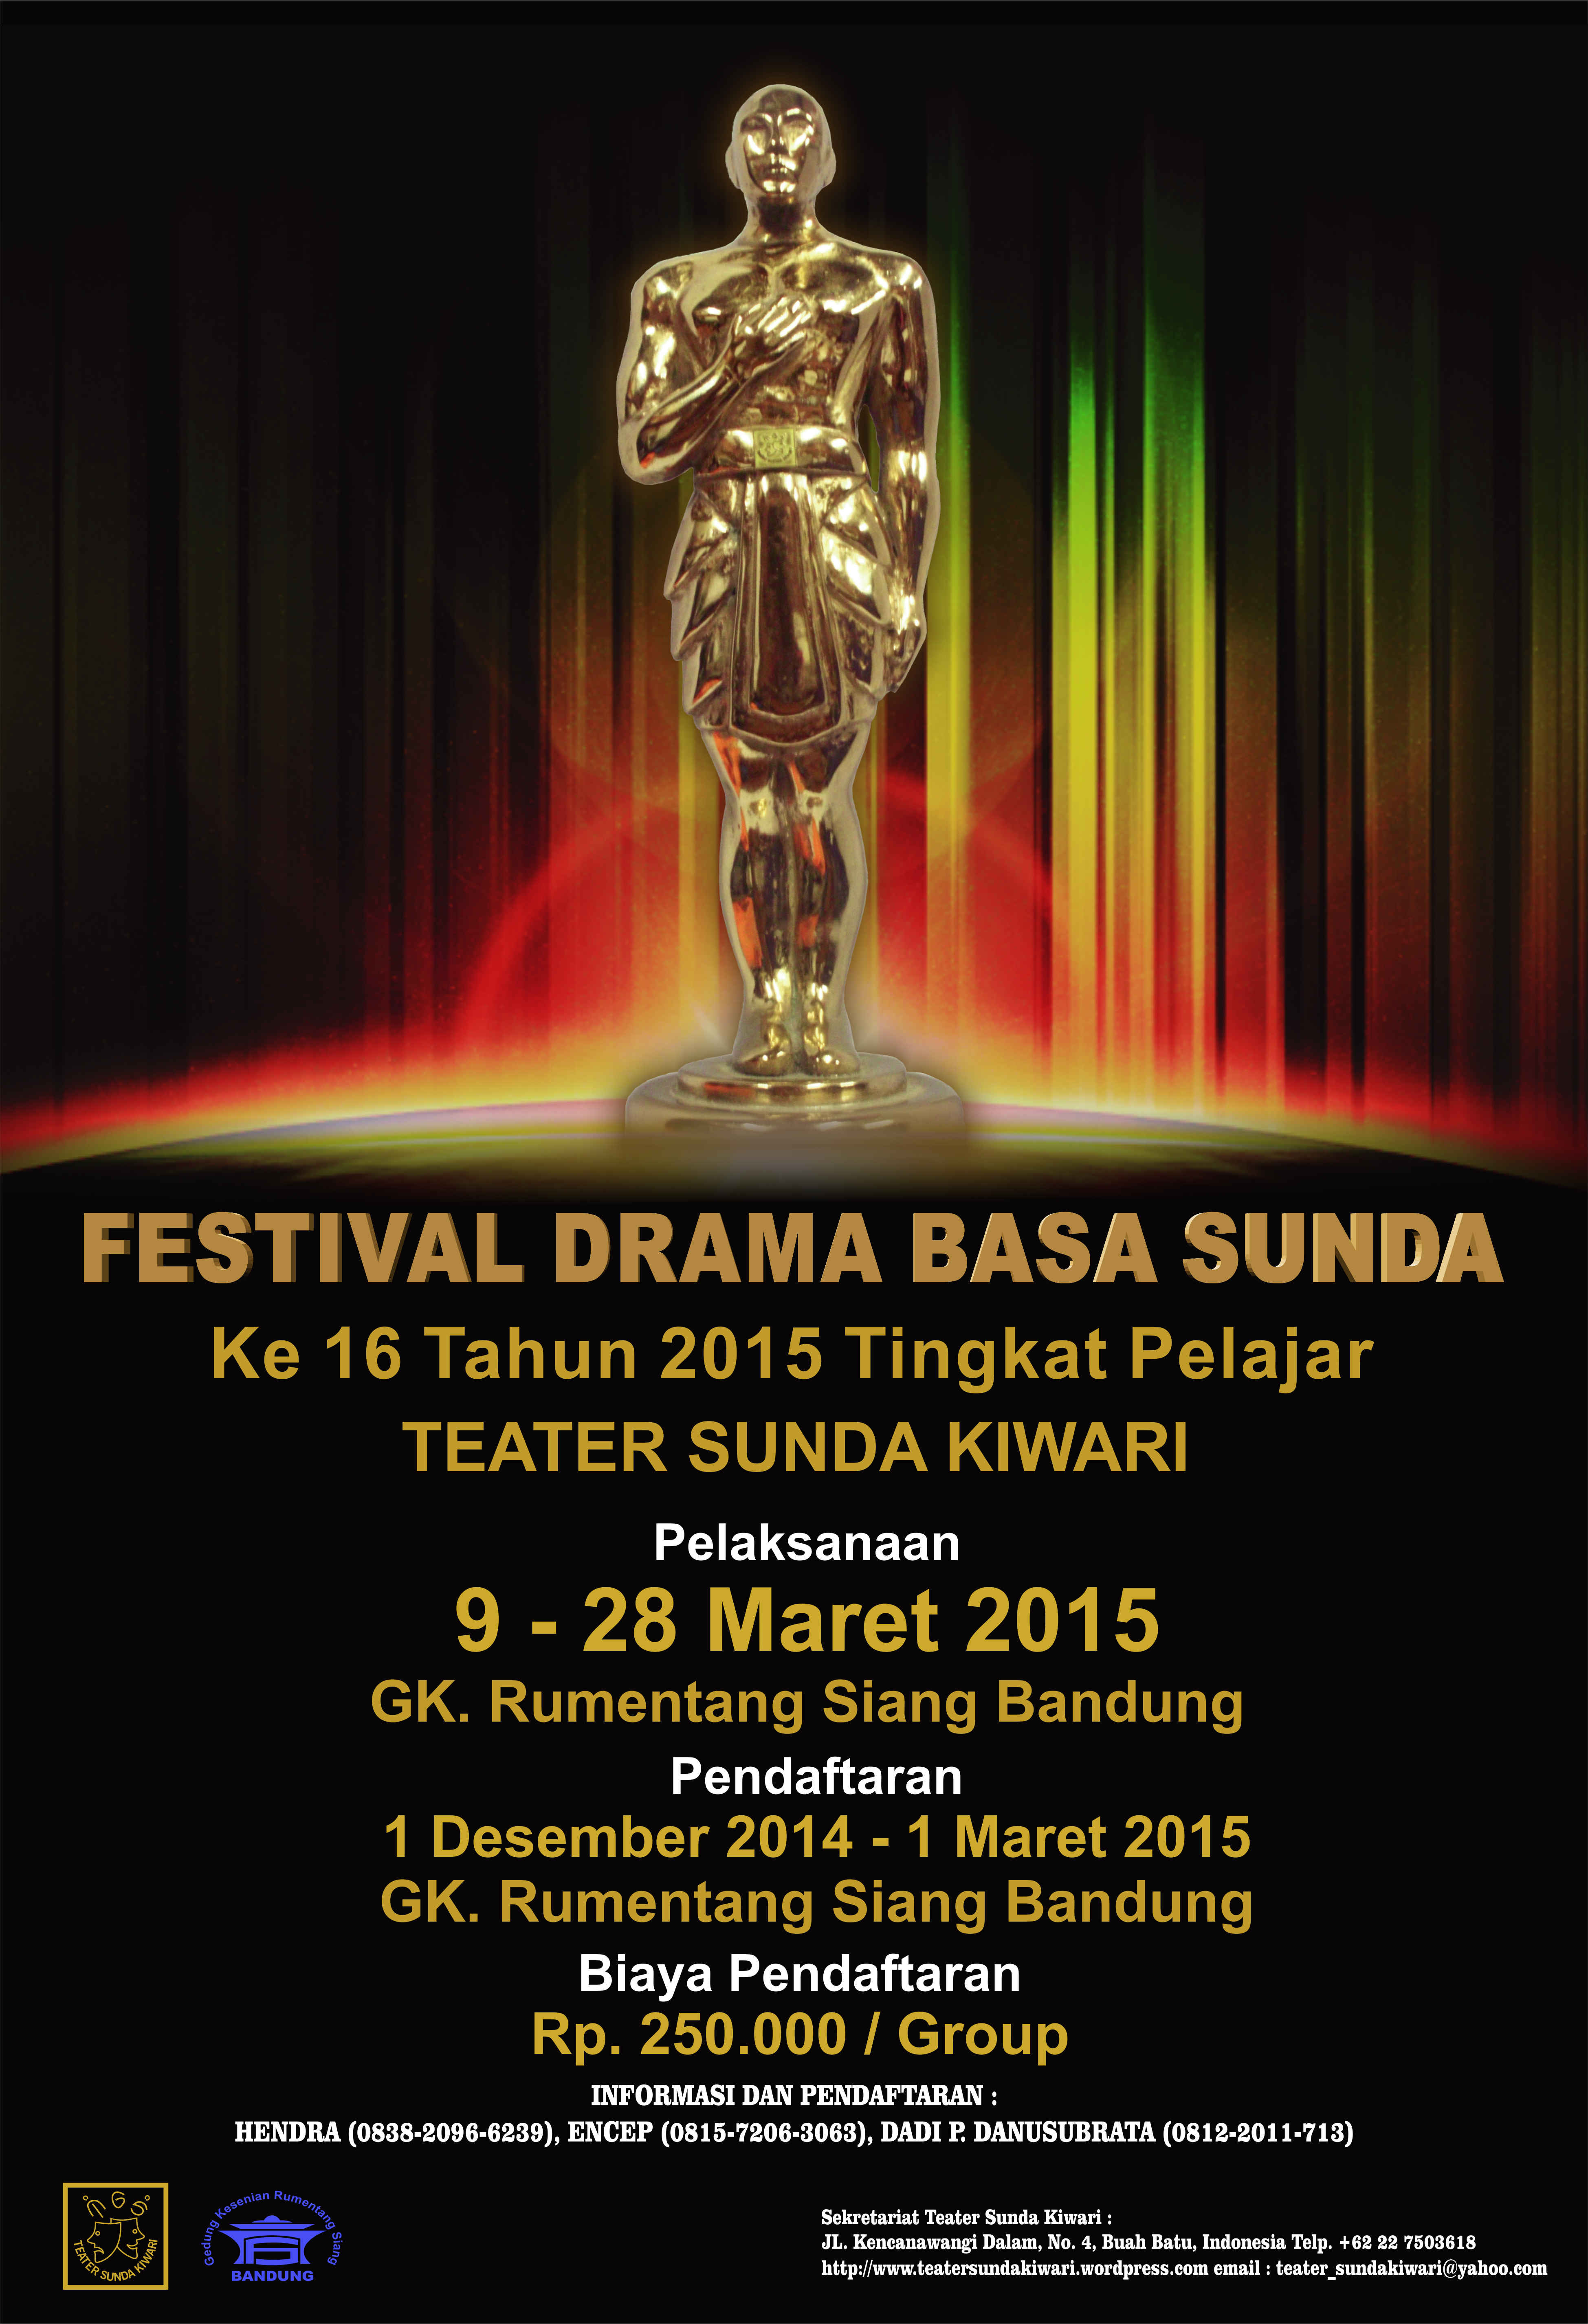 Festival Drama Basa Sunda Teater Sunda Kiwari